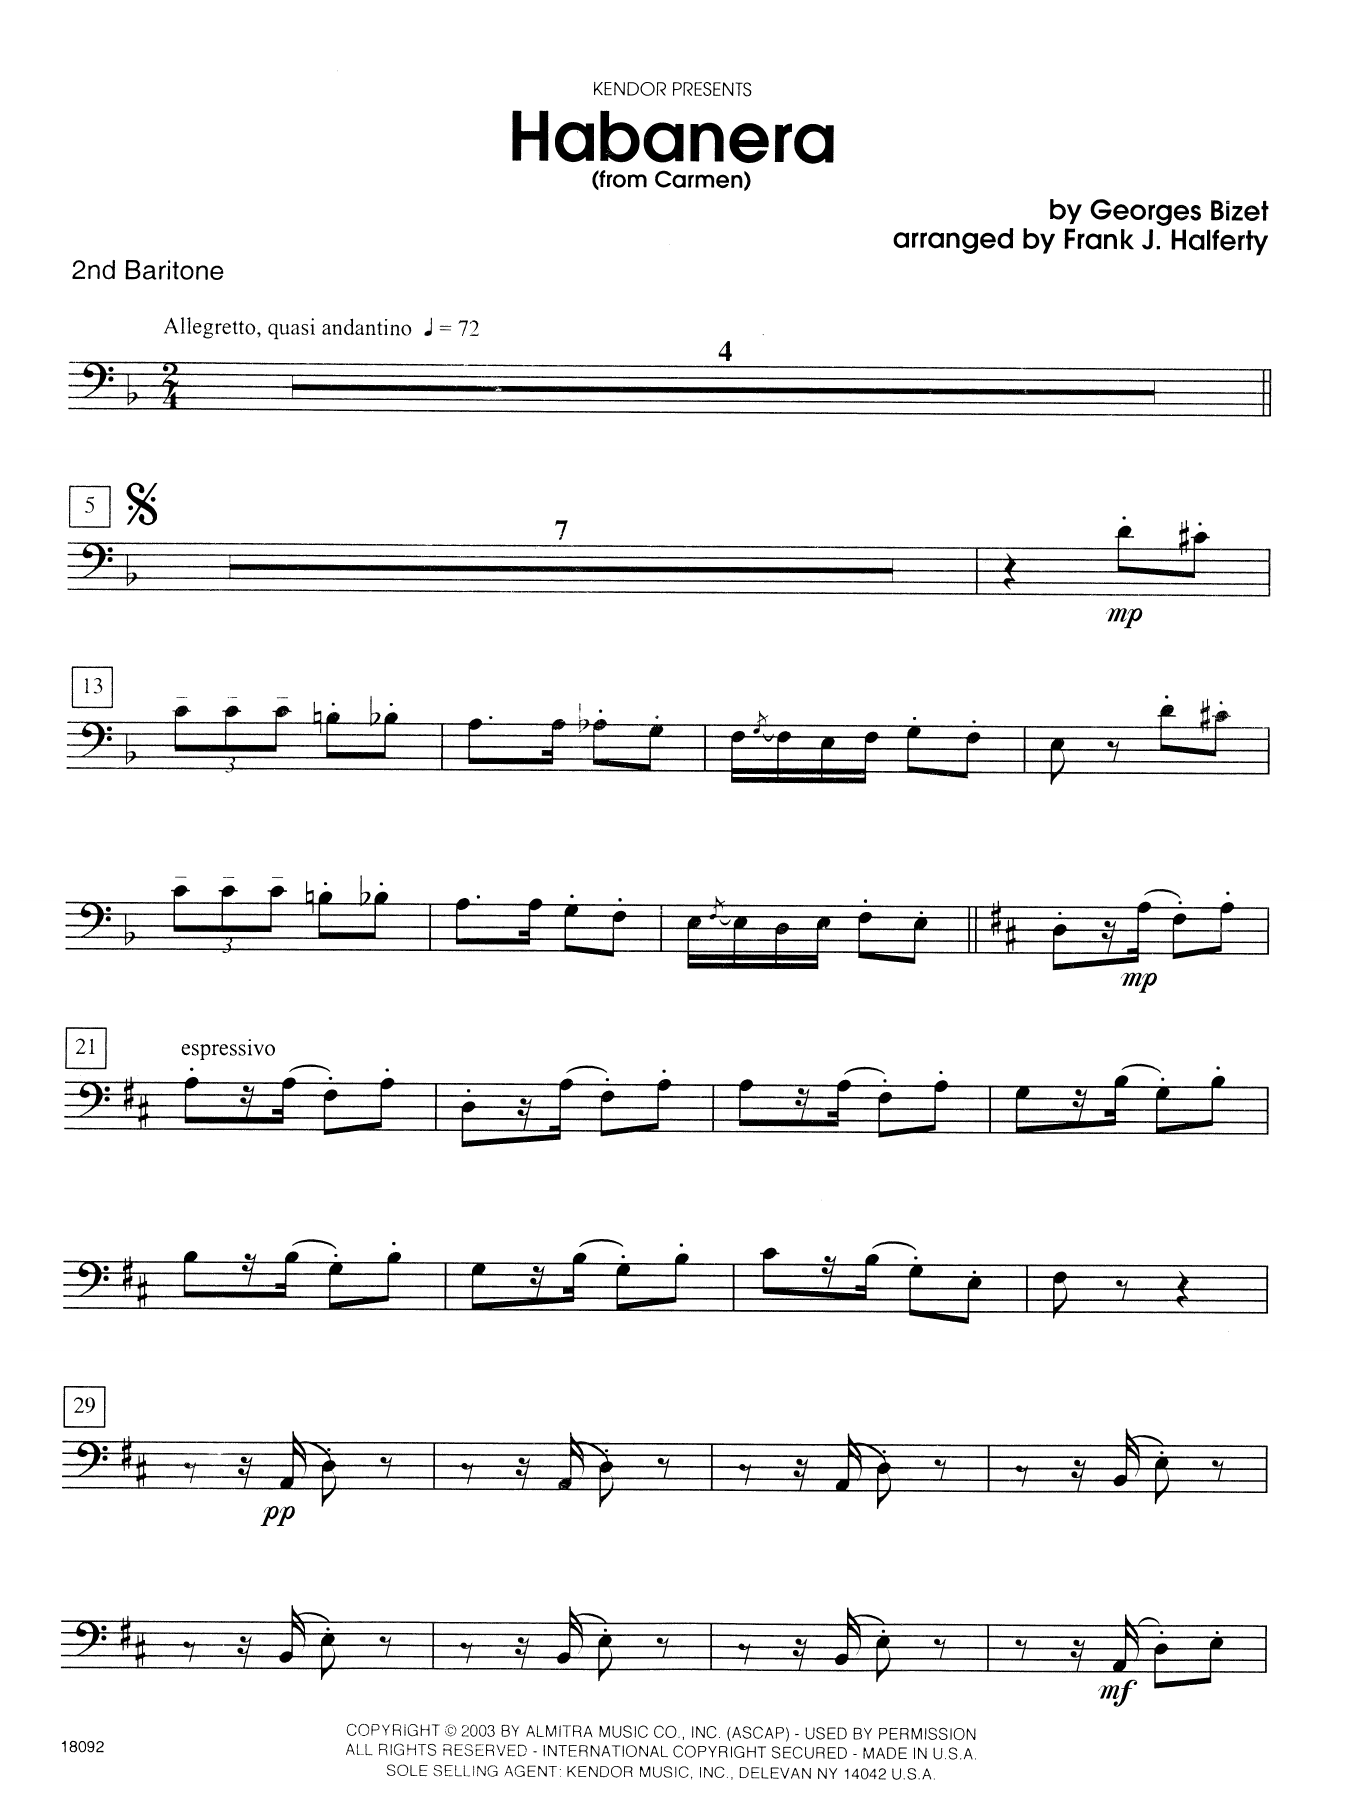 Download Halferty Habanera (from Carmen) - 2nd Baritone B Sheet Music